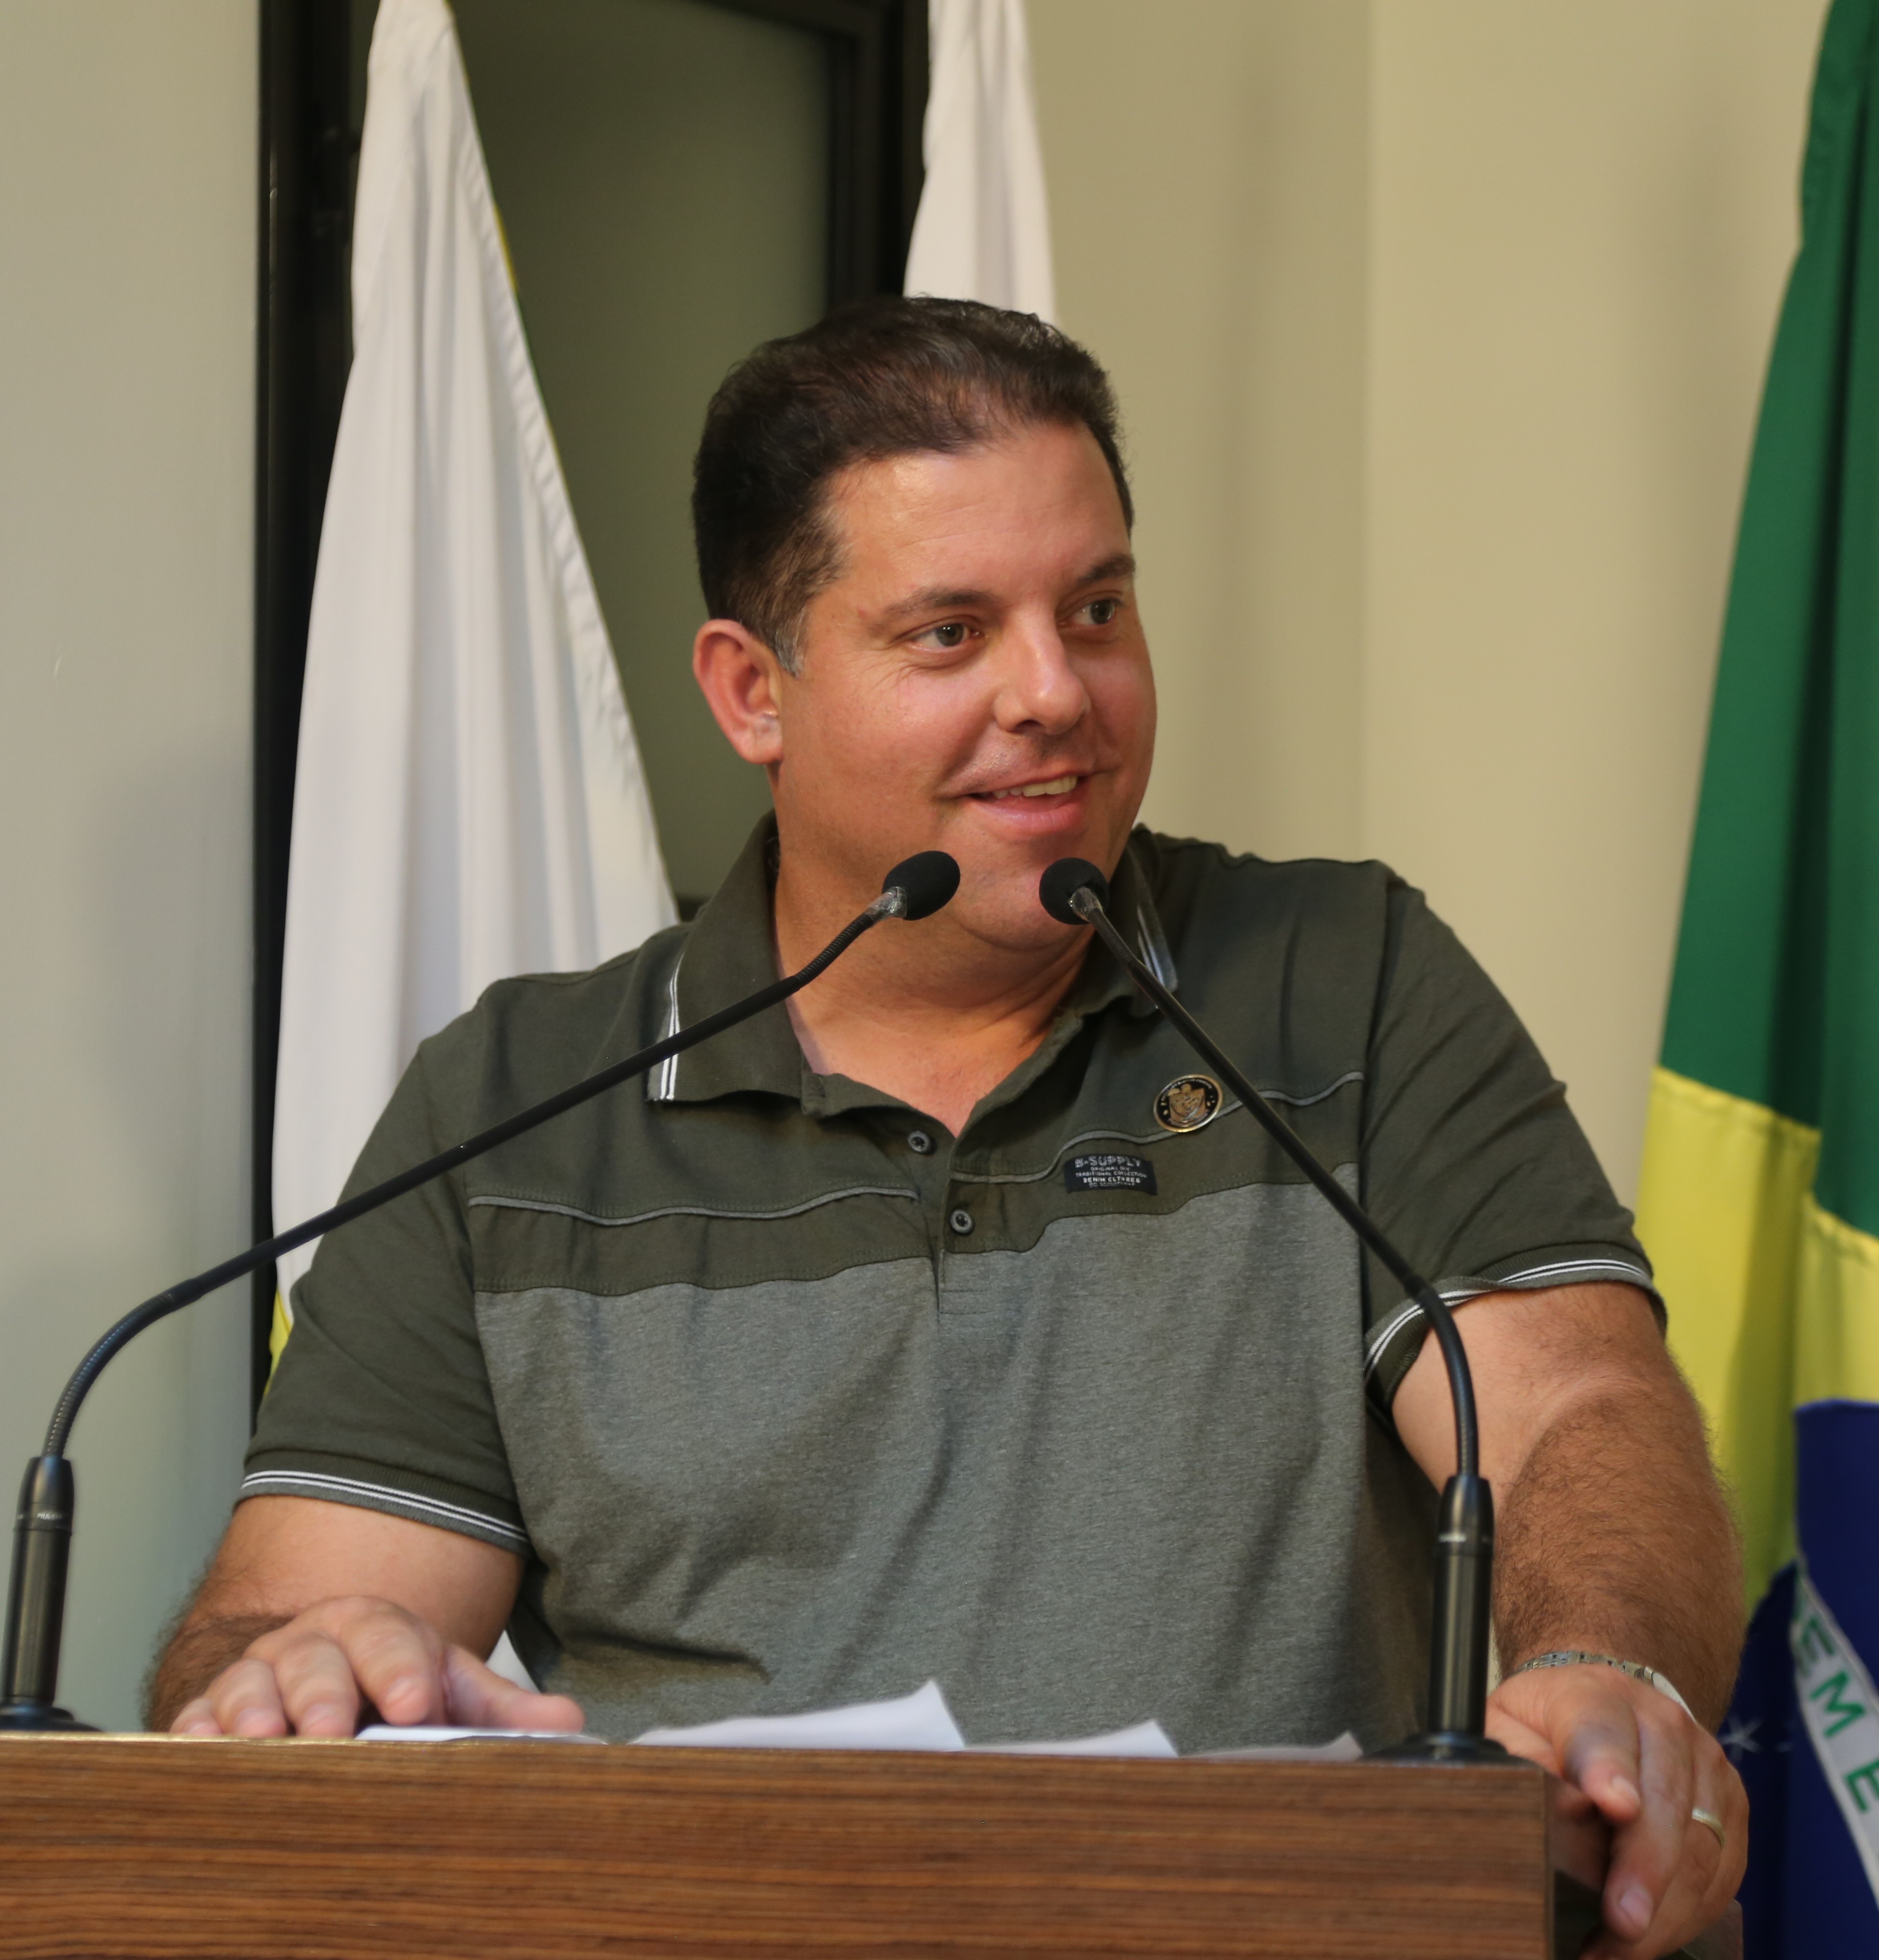 Vereador Sérgio Marota (PL), Presidente da Comissão de Saúde e Assistência Social